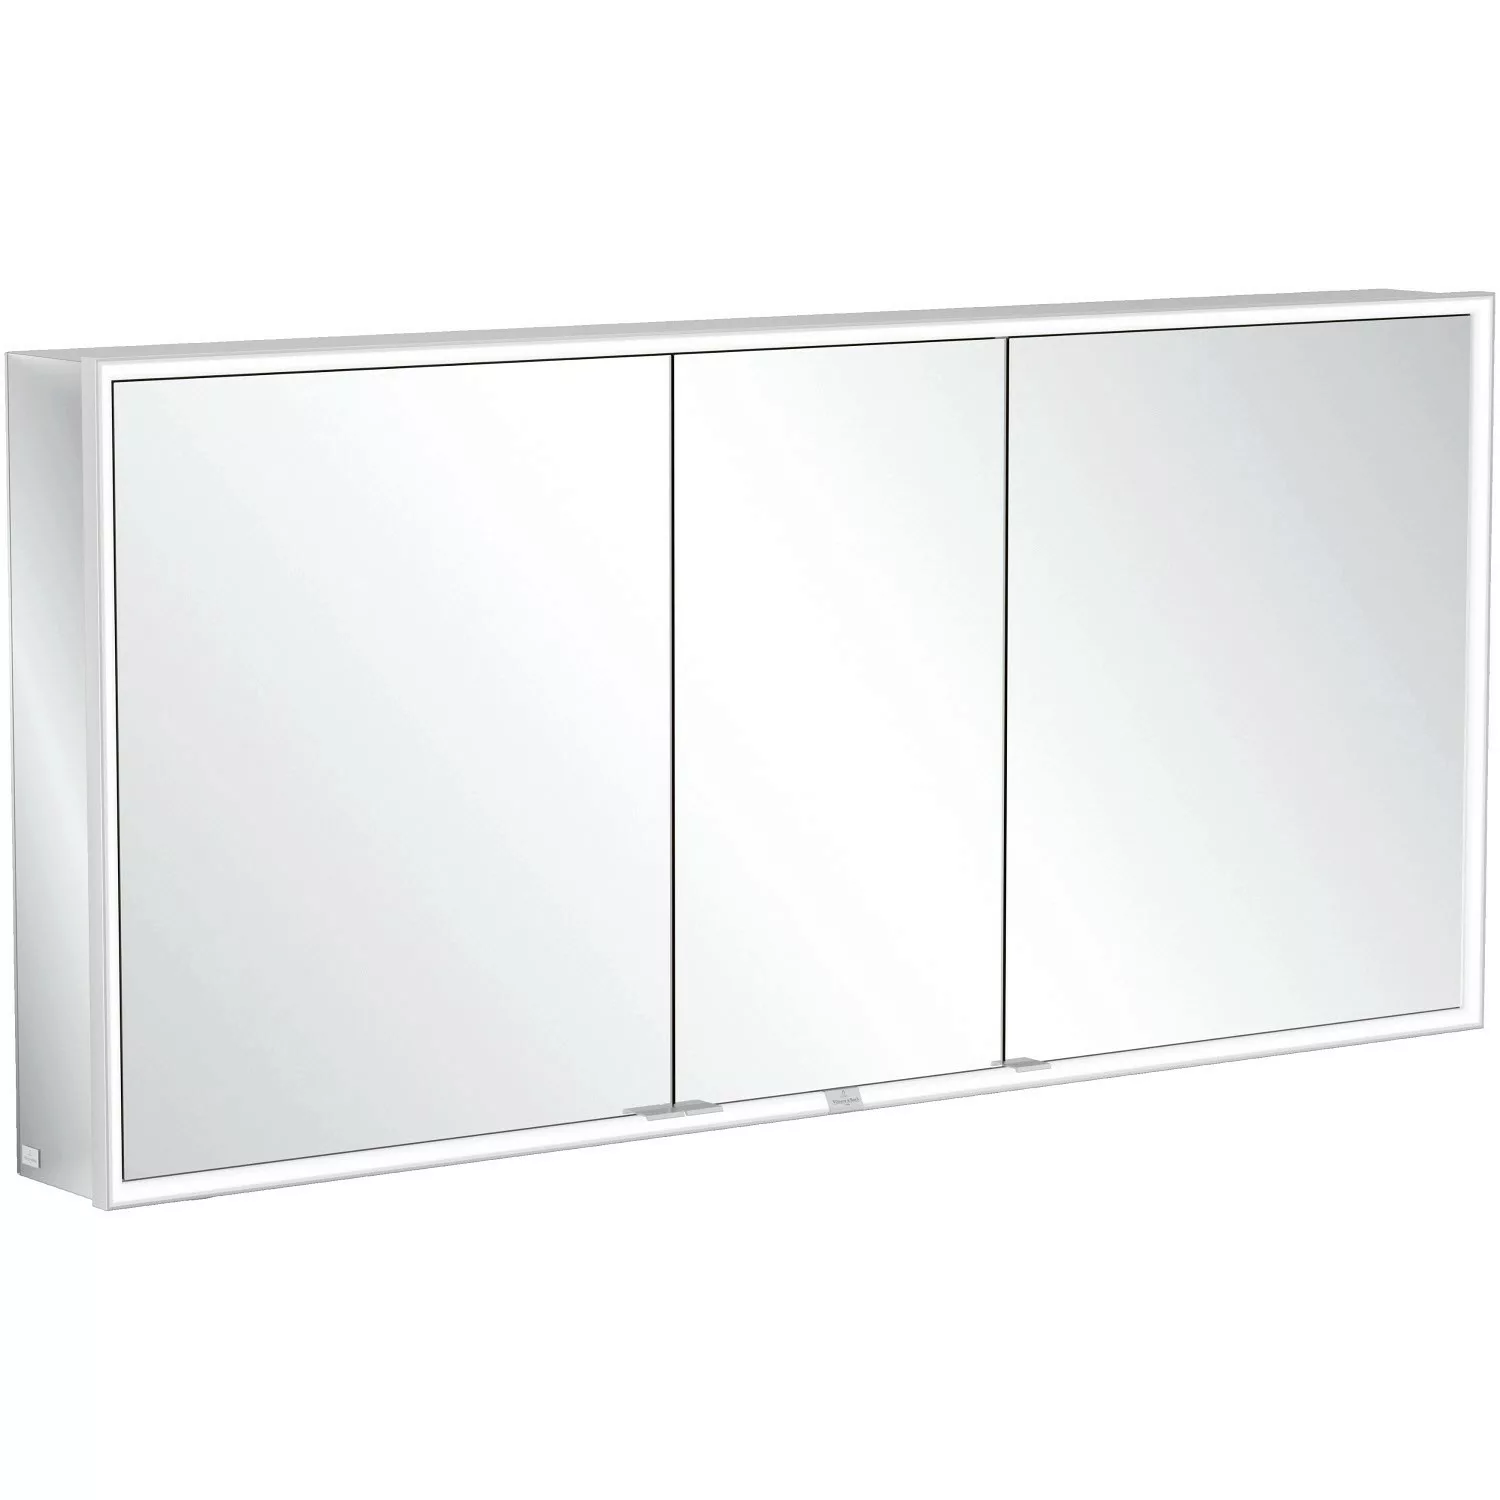 Villeroy & Boch Vorbau-Spiegelschrank 160 cm My View Now 3 Türen Smart Home günstig online kaufen